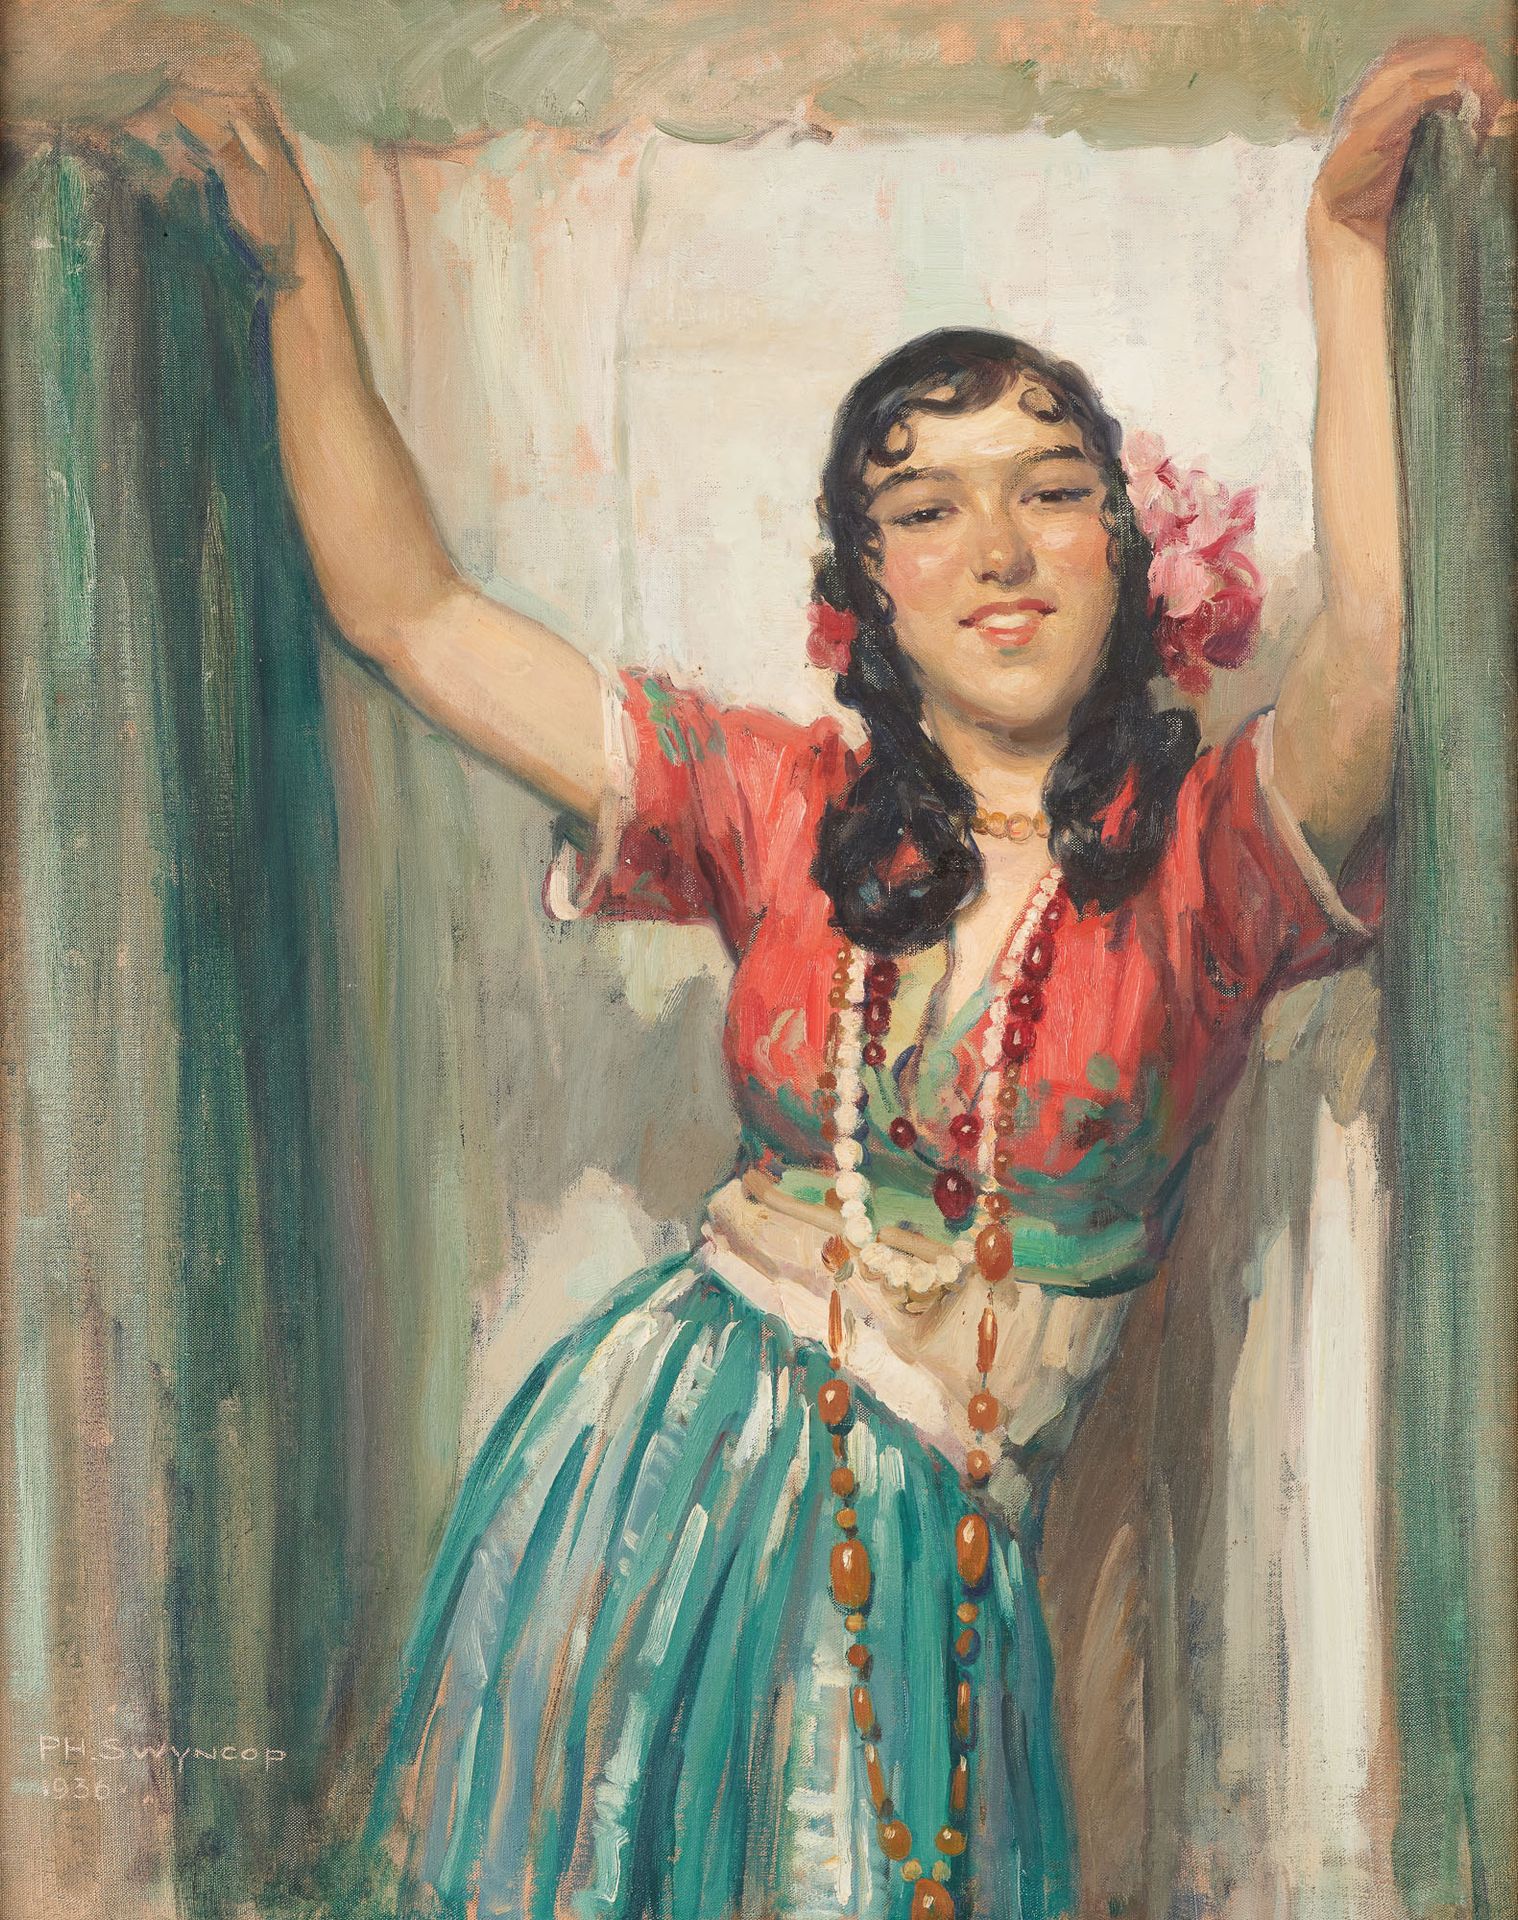 PHILIPPE SWYNCOP Ecole belge (1878-1949) Óleo sobre lienzo: Mujer joven con toca&hellip;